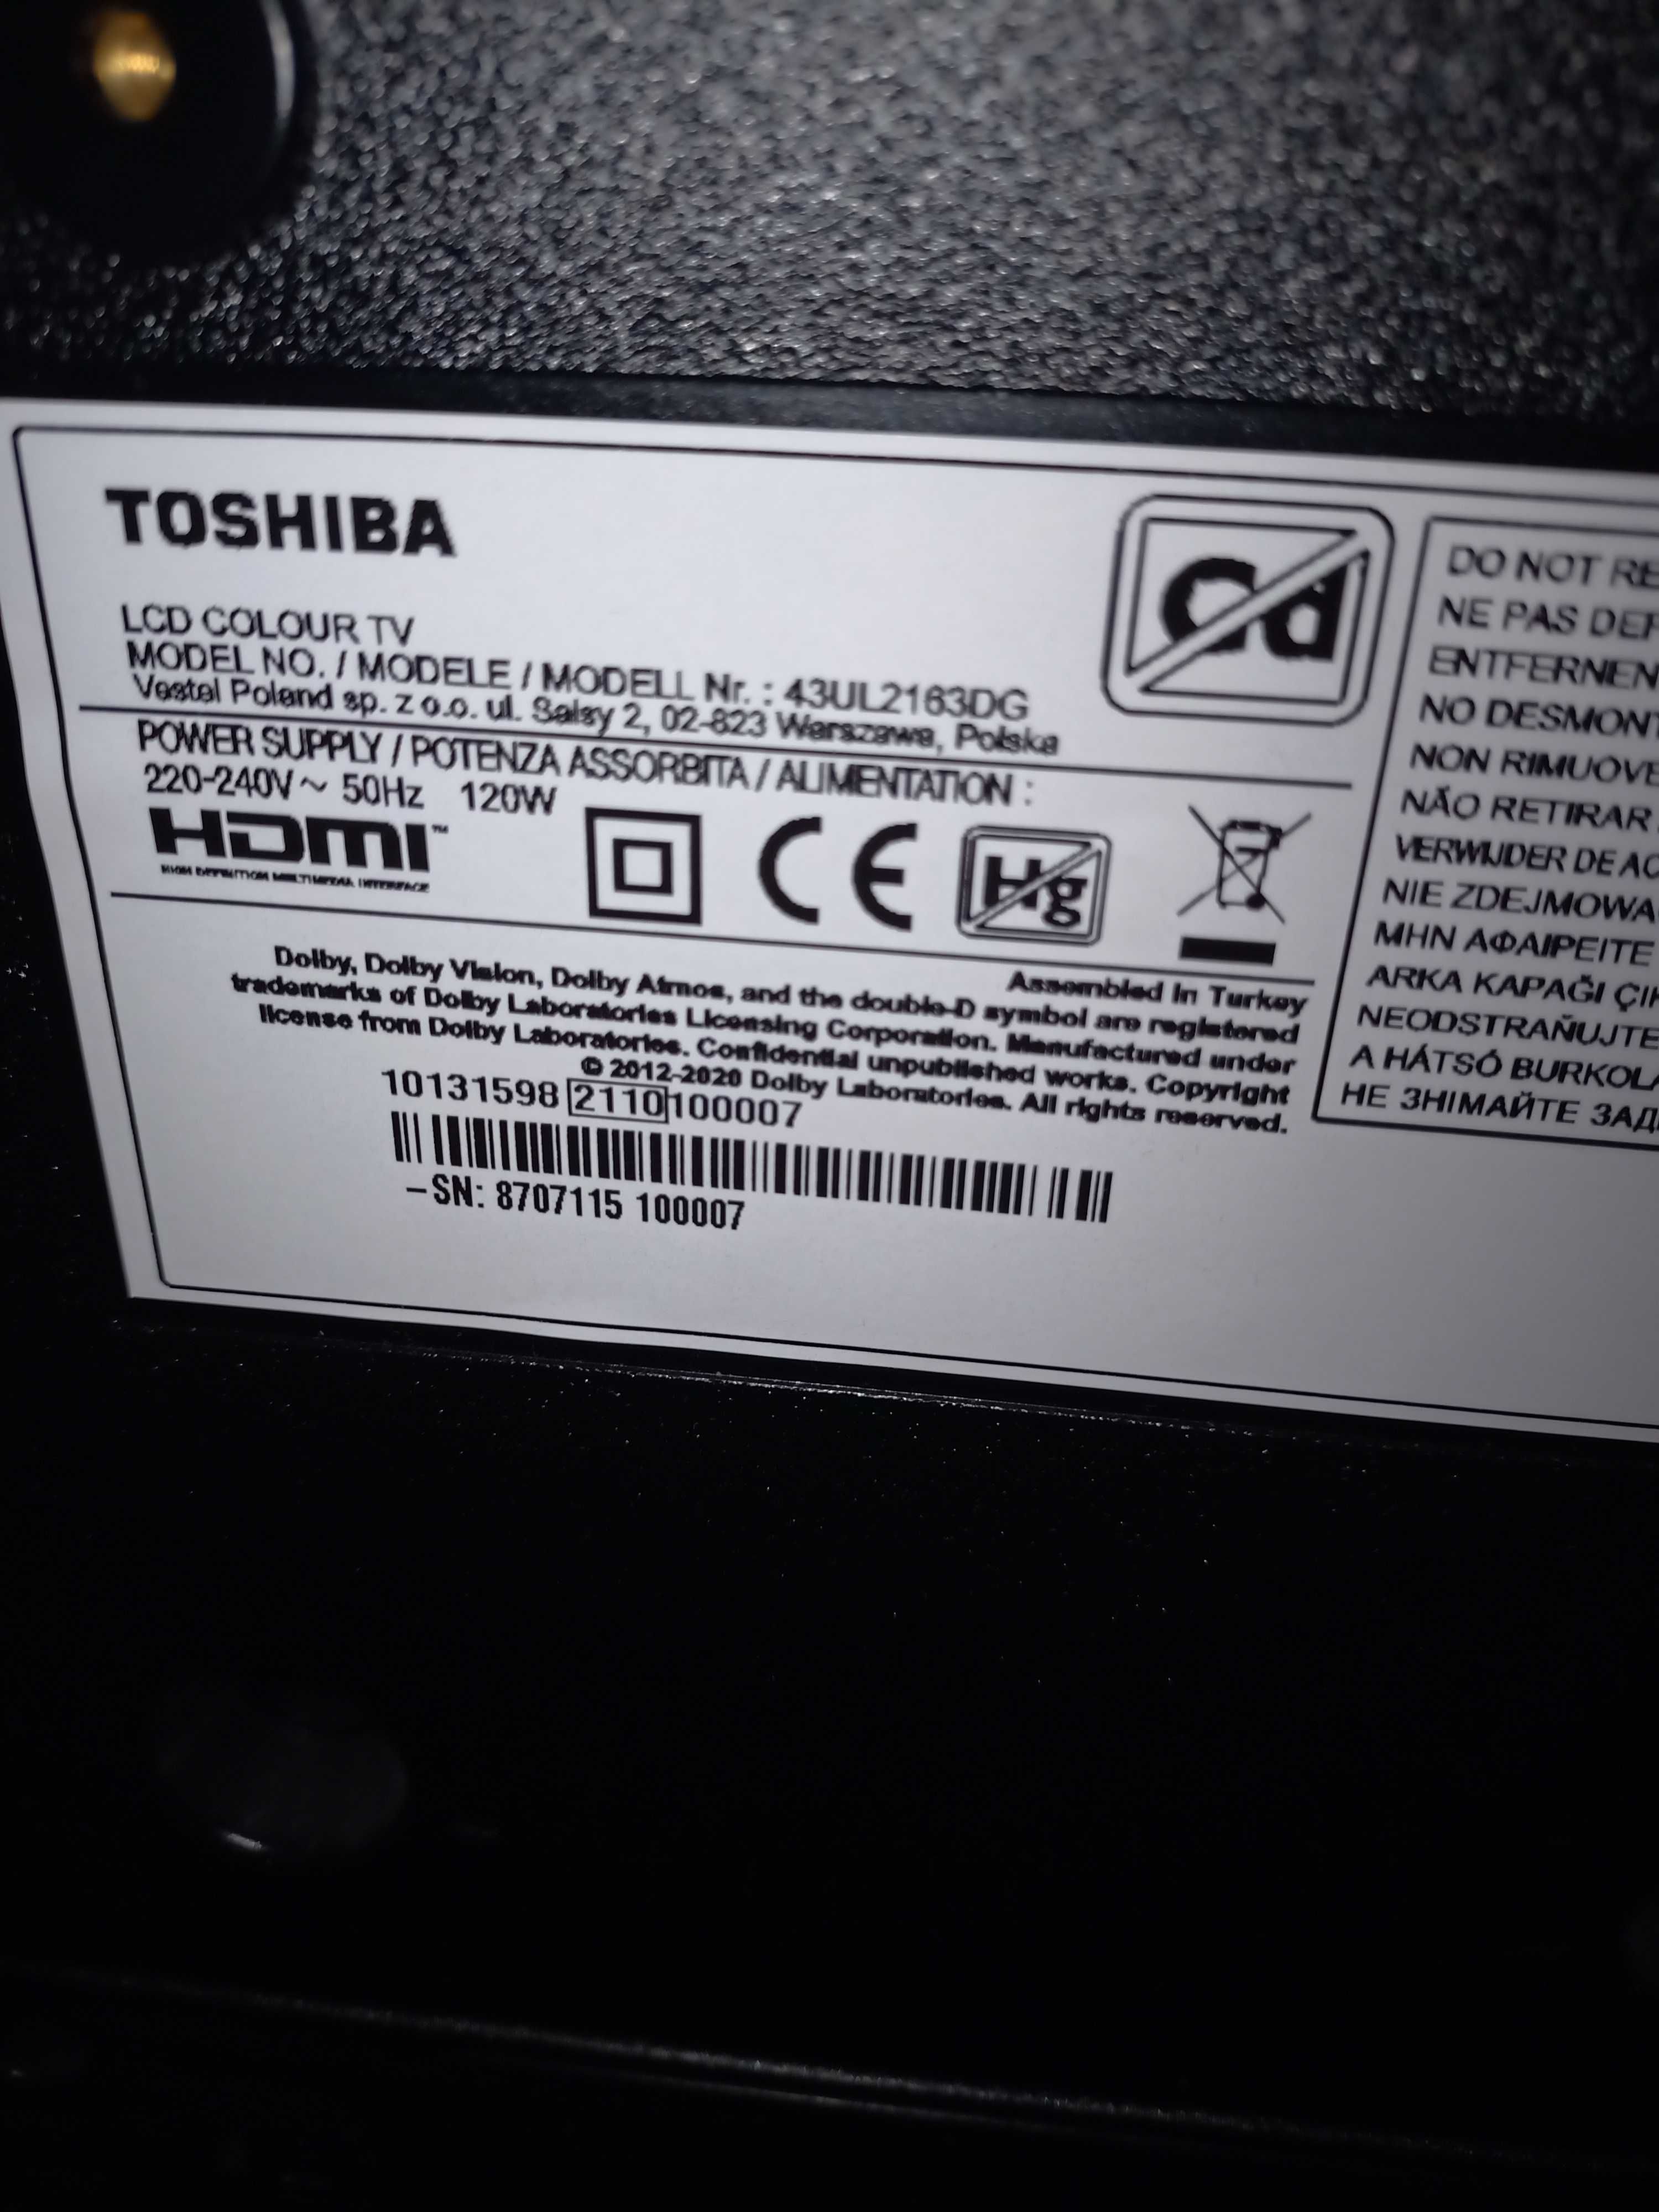 Telewizor Toshiba UHD 4K 43cale używany w bardzo dobrym